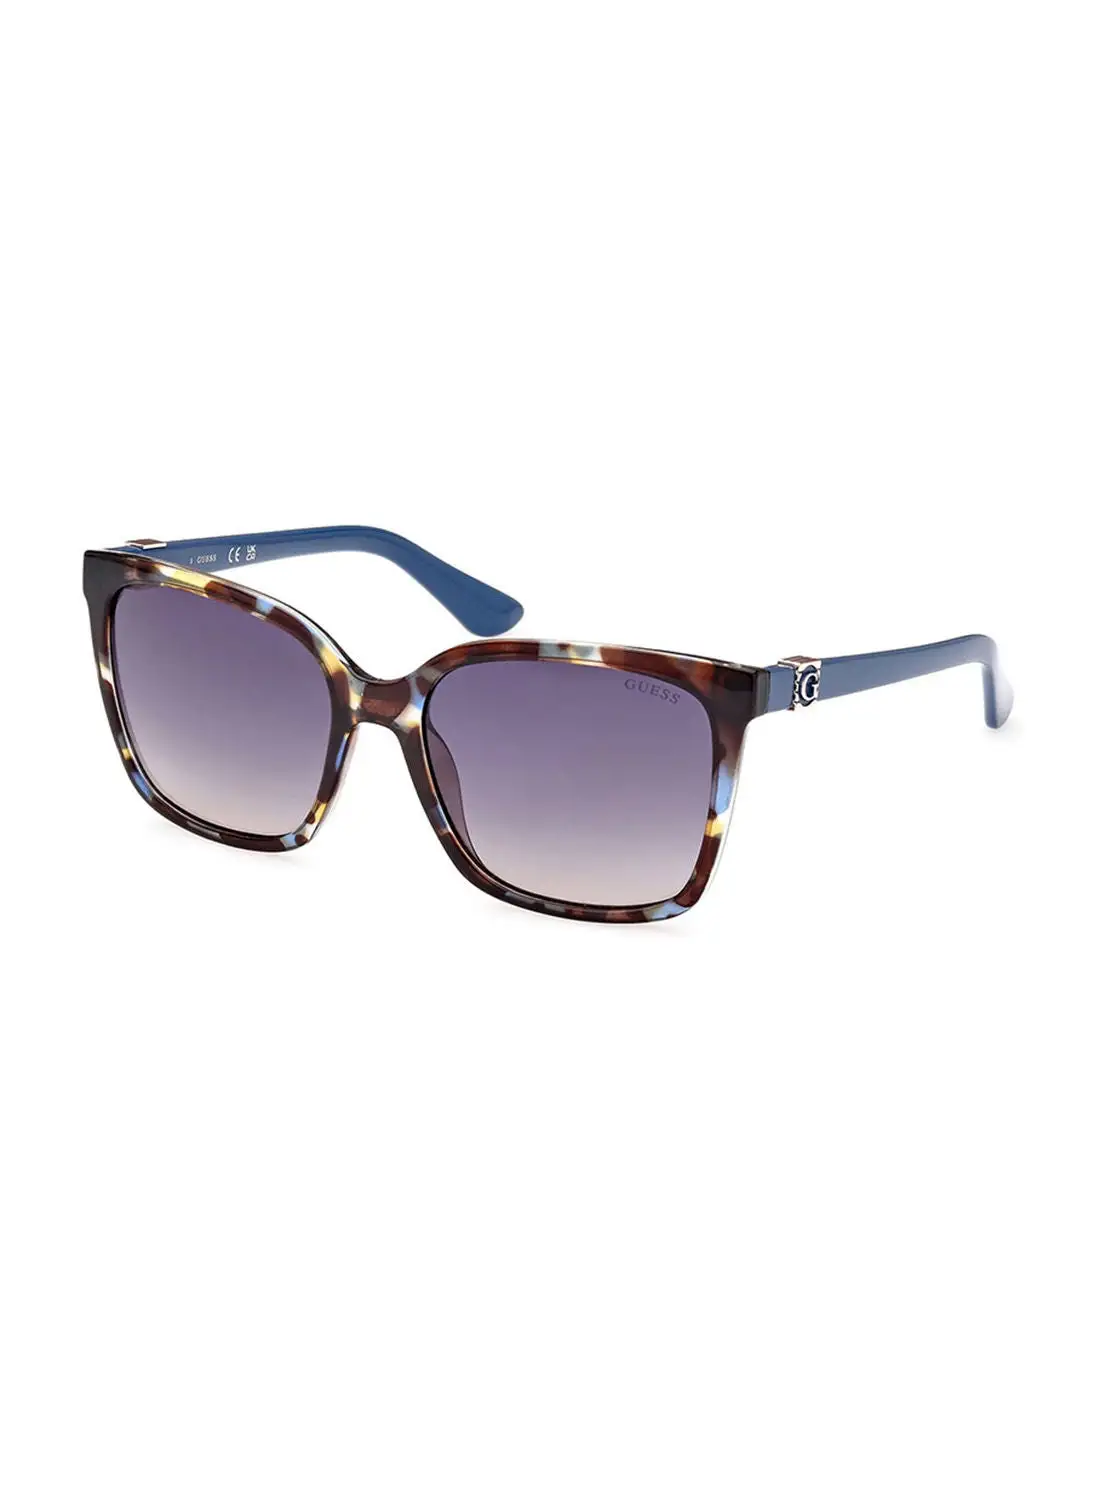 GUESS Sunglasses For Women GU786592B57